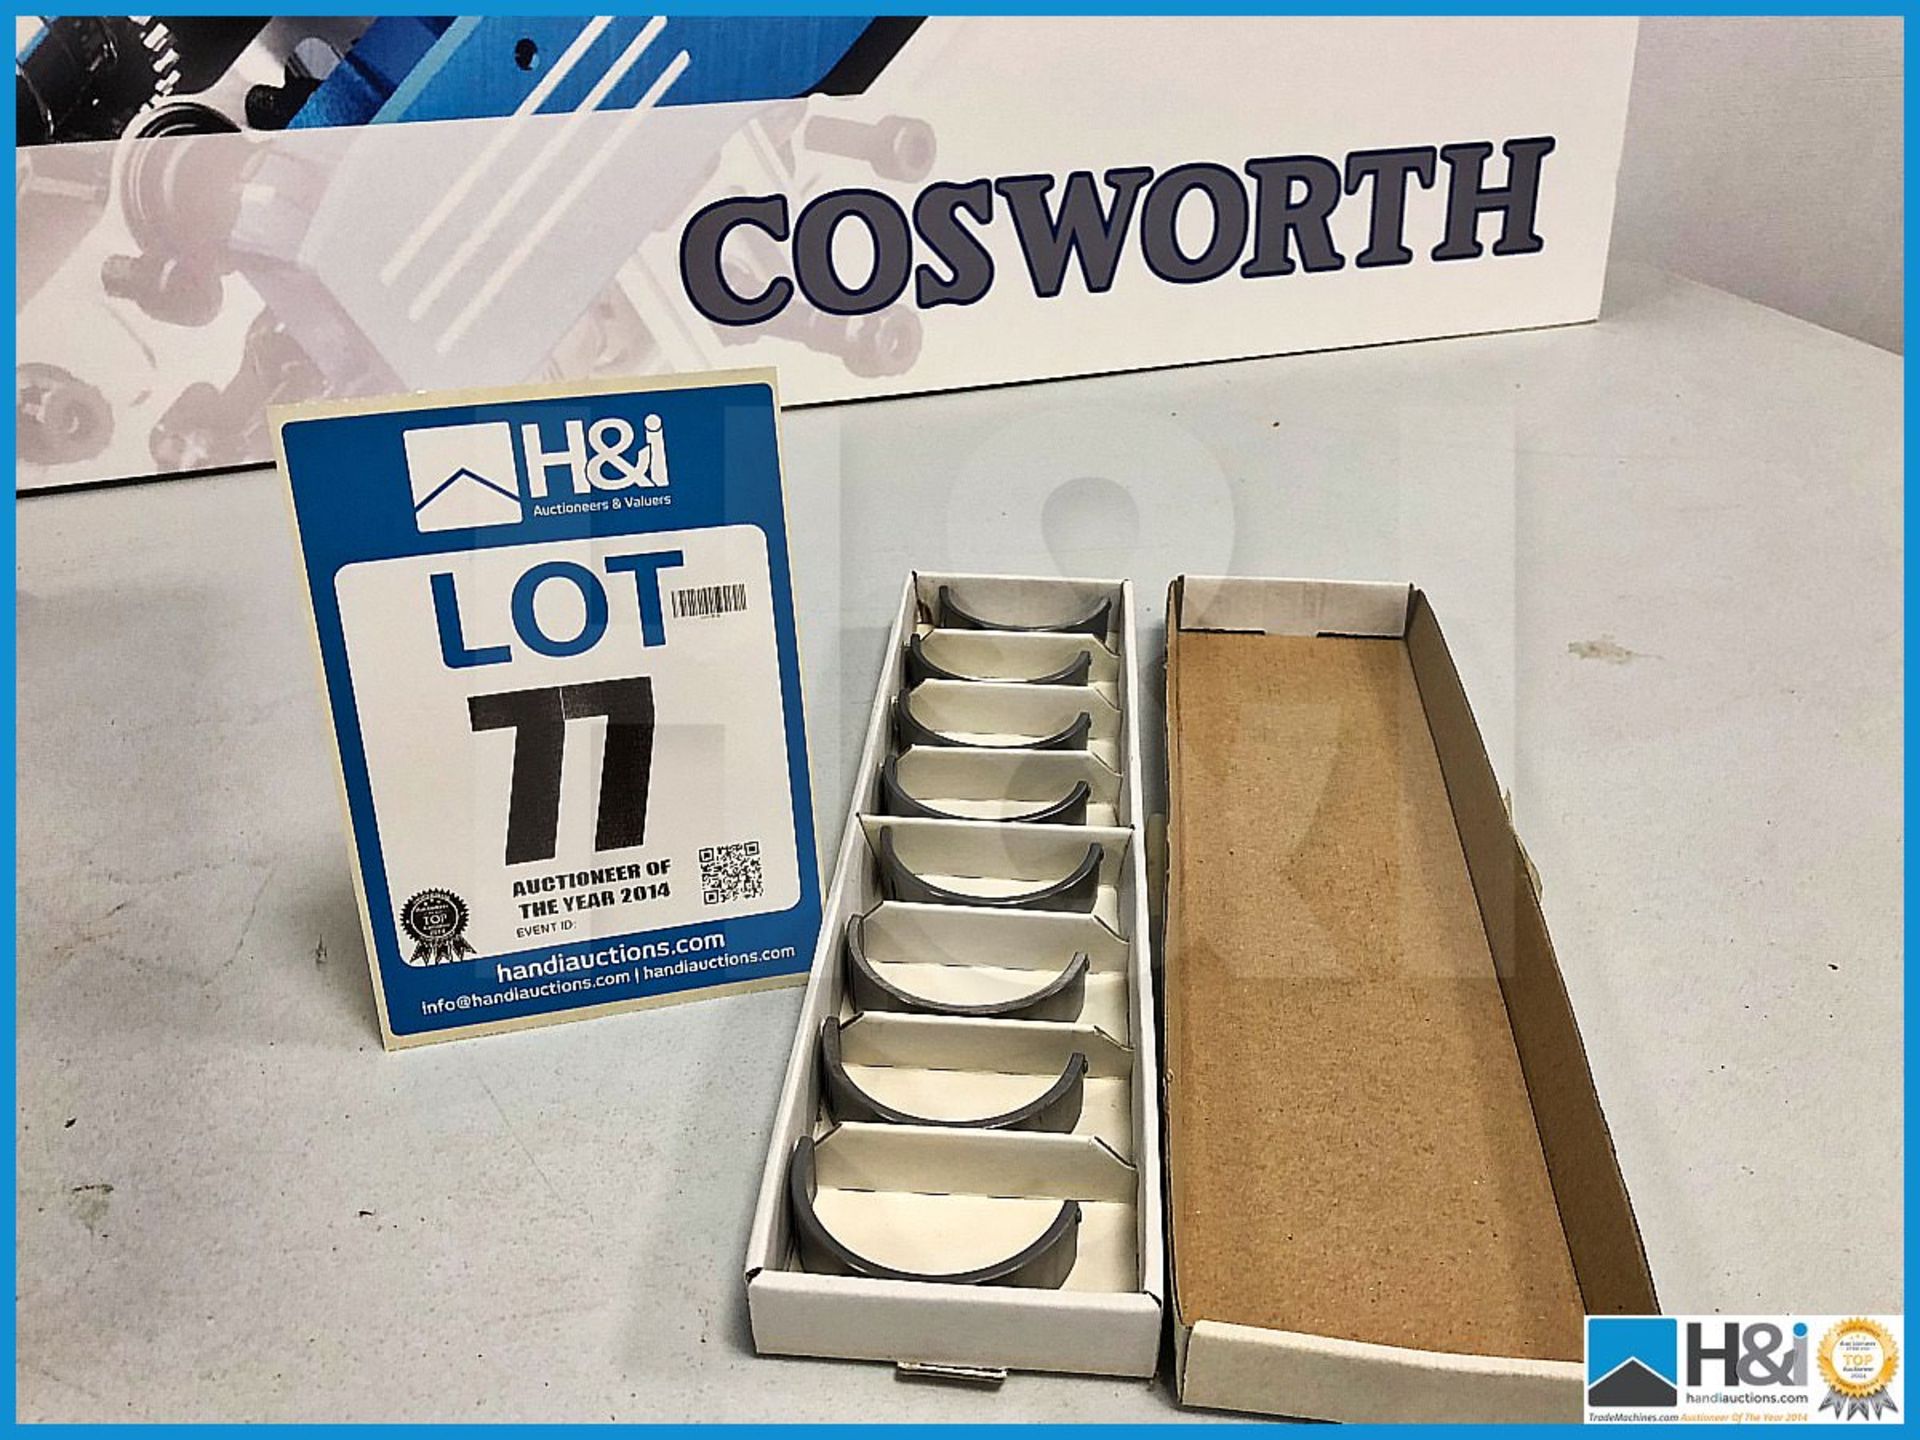 58 x Cosworth XG bearing main sump +0.4. Code: XG0069. Lot 243